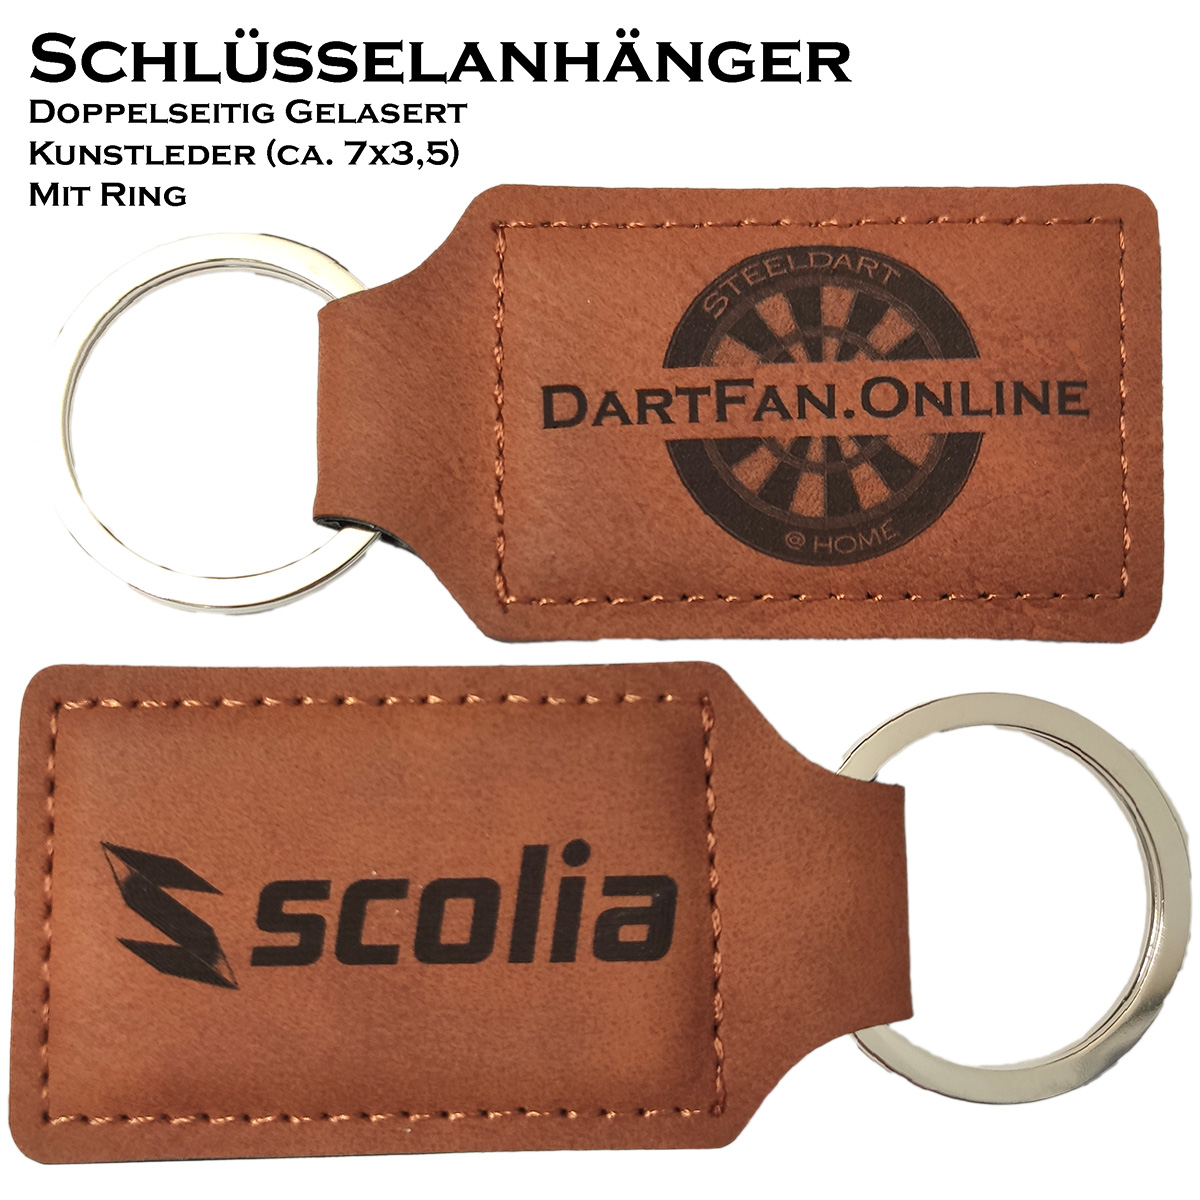 Schlüsselanhänger DartFan.online and Scolia